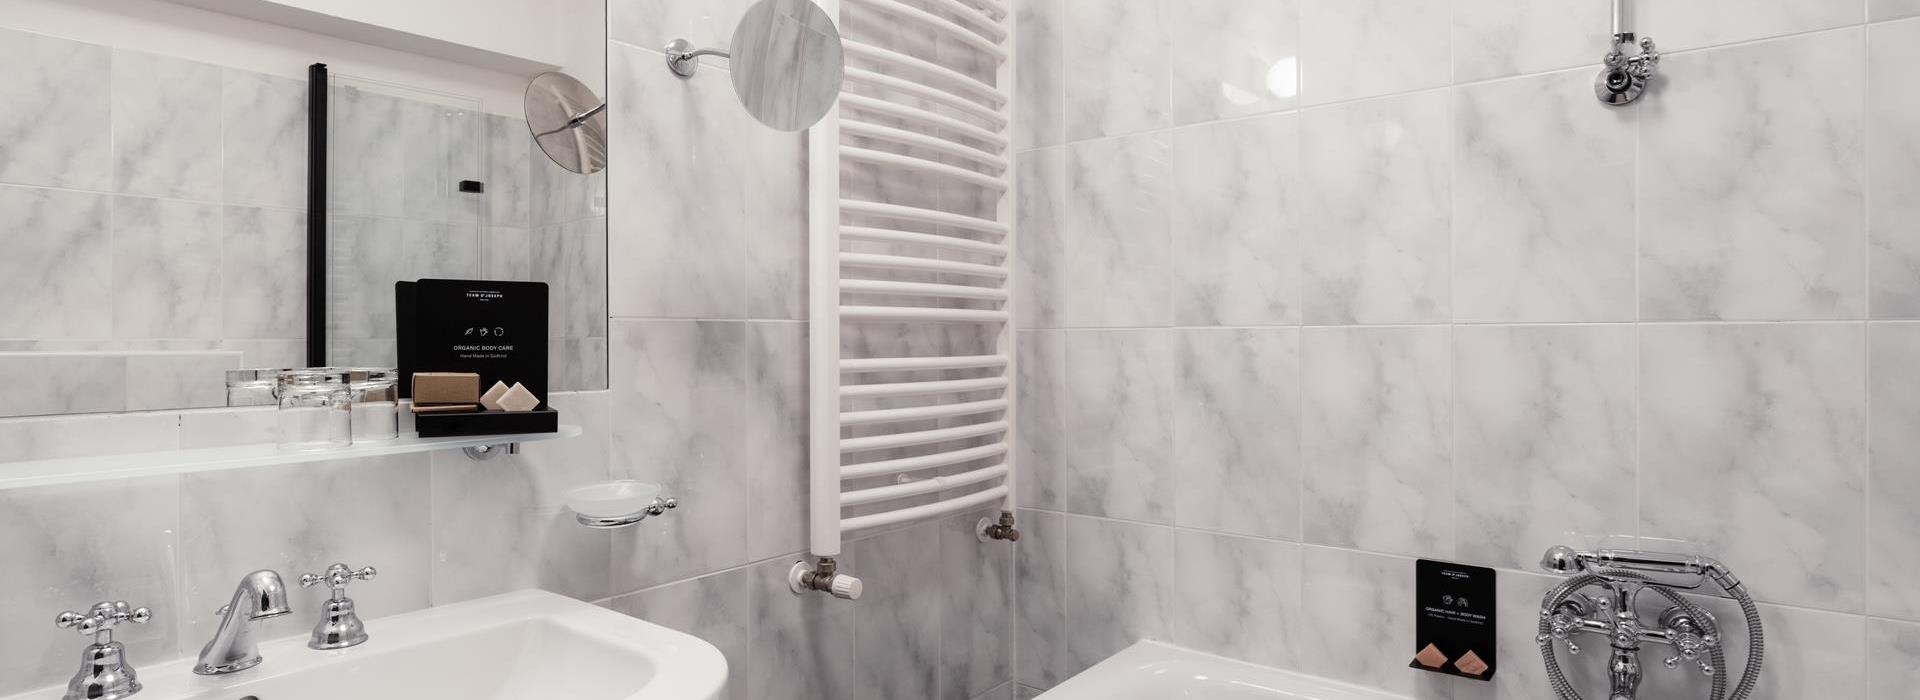 Badezimmer des Comfort Chalets mit Waschtisch und Badewanne